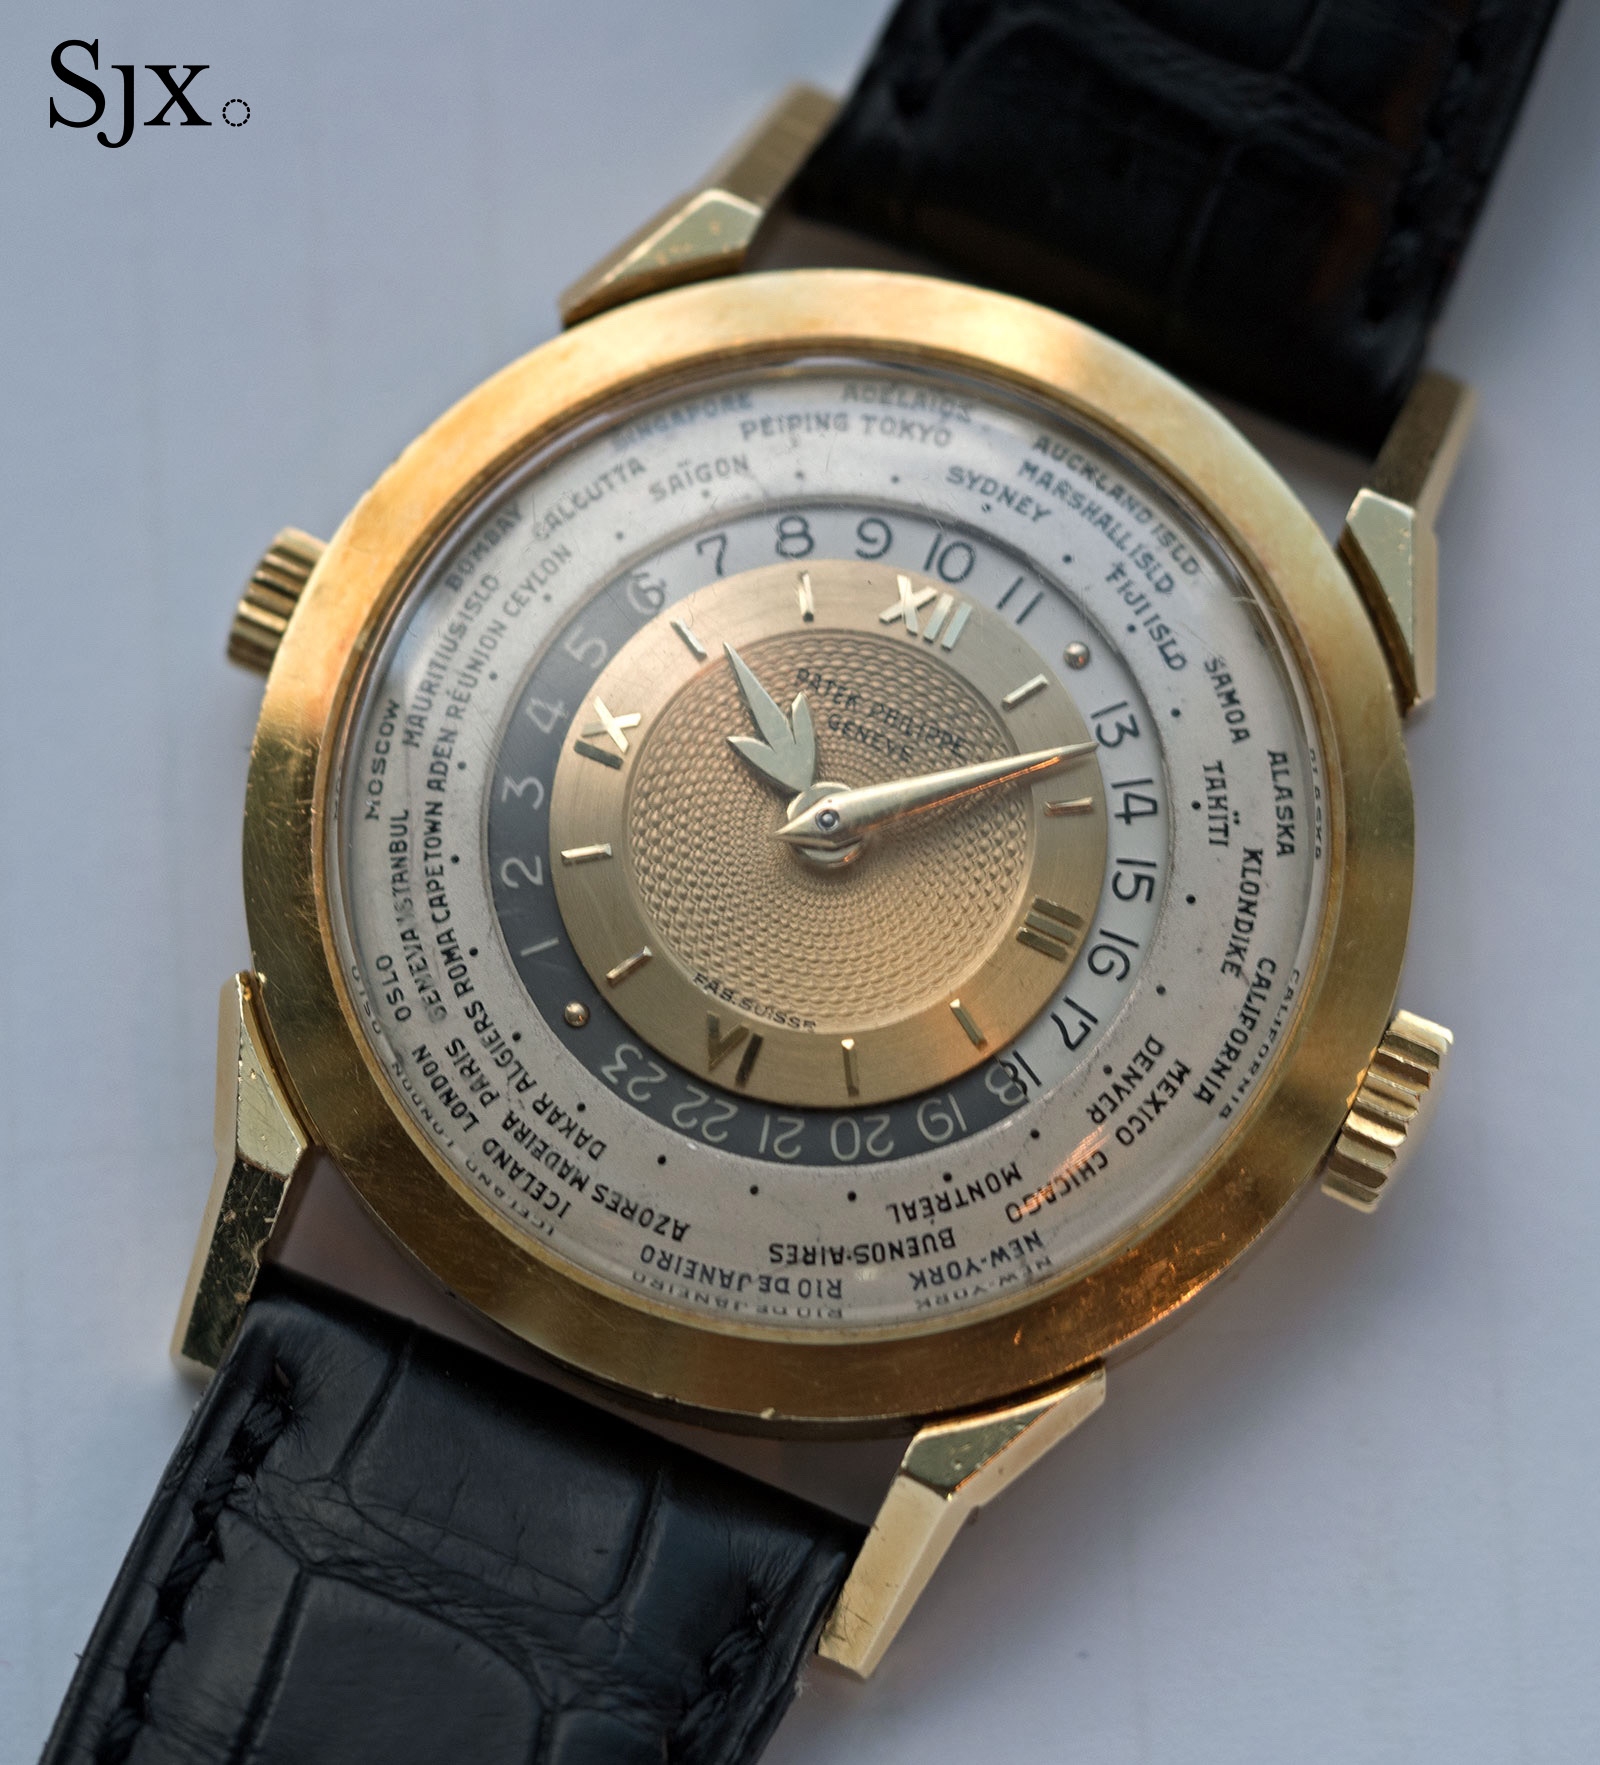 Đồng hồ Patek Philippe ref. 2523 HU không phải là một cú hit vào thời nó ra mắt. Chiếc đồng hồ này nổi tiếng là do giá cao, sở hữu thiết kế góc cạnh và táo bạo, đáng chú ý nhất là dáng càng nối dây. Còn hiện tại, chiếc đồng hồ này rất hiếm, có giá trị bảy con số